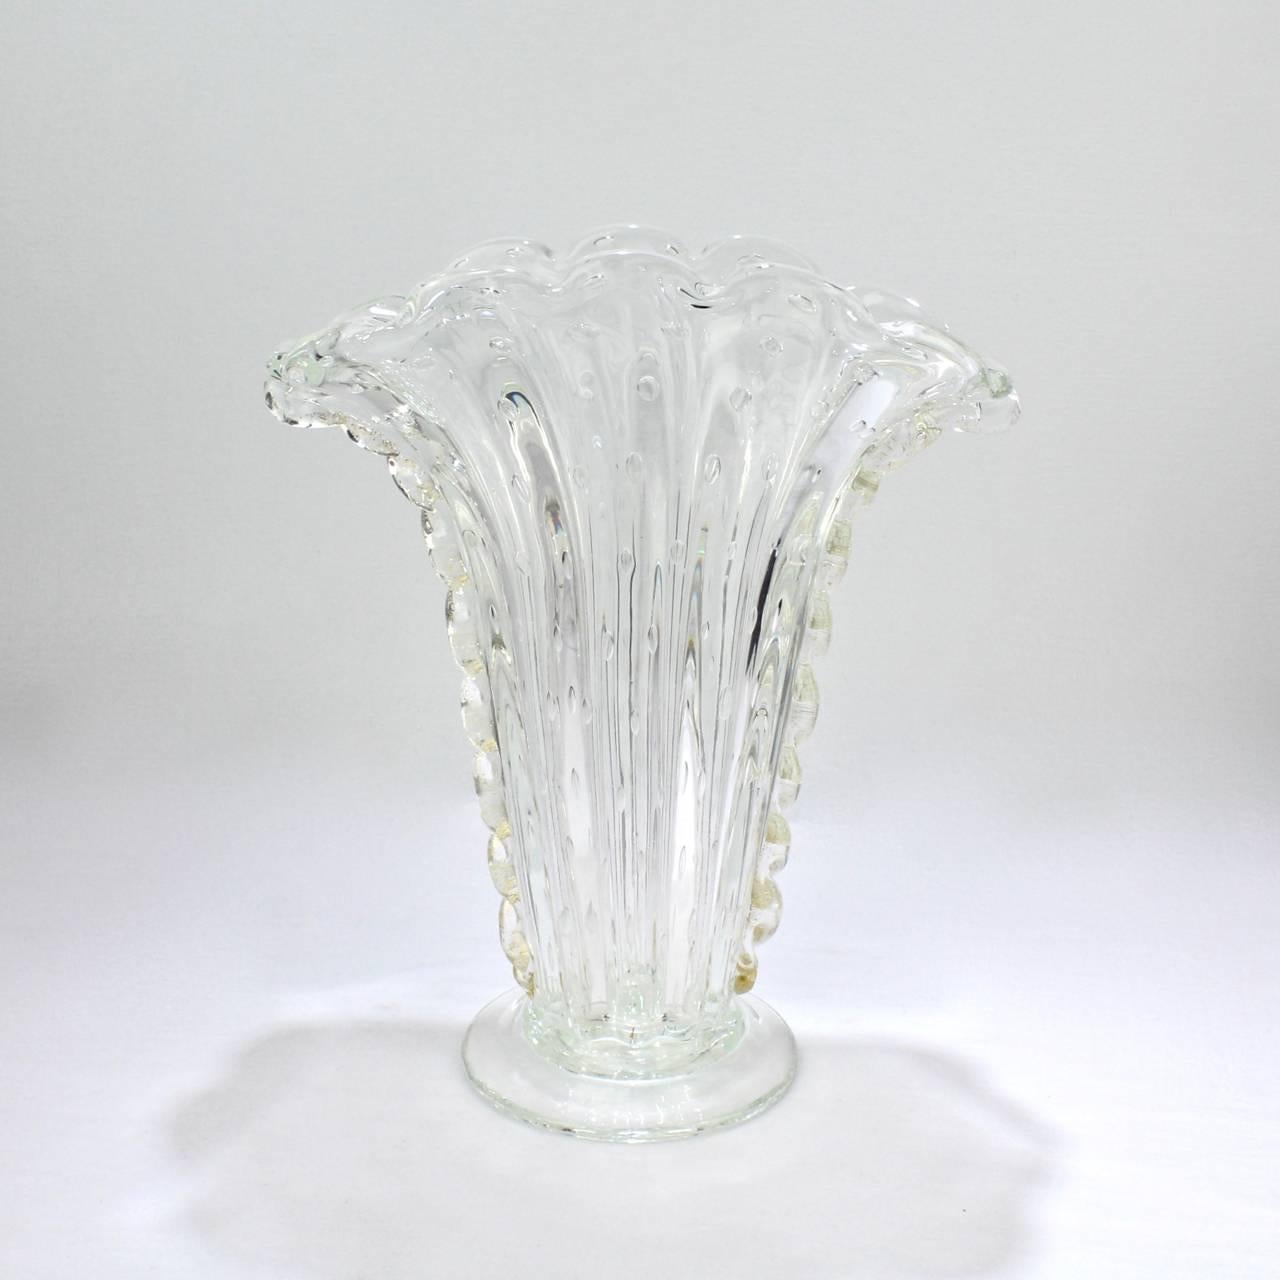 Magnifique vase à fleurs en forme d'éventail en verre italien Bullicante.

Attribué à Barovier&Toso.

En verre transparent avec des bulles capturées, des inclusions de feuilles d'or et une marque de pontil polie à la base.

Mesures : Hauteur